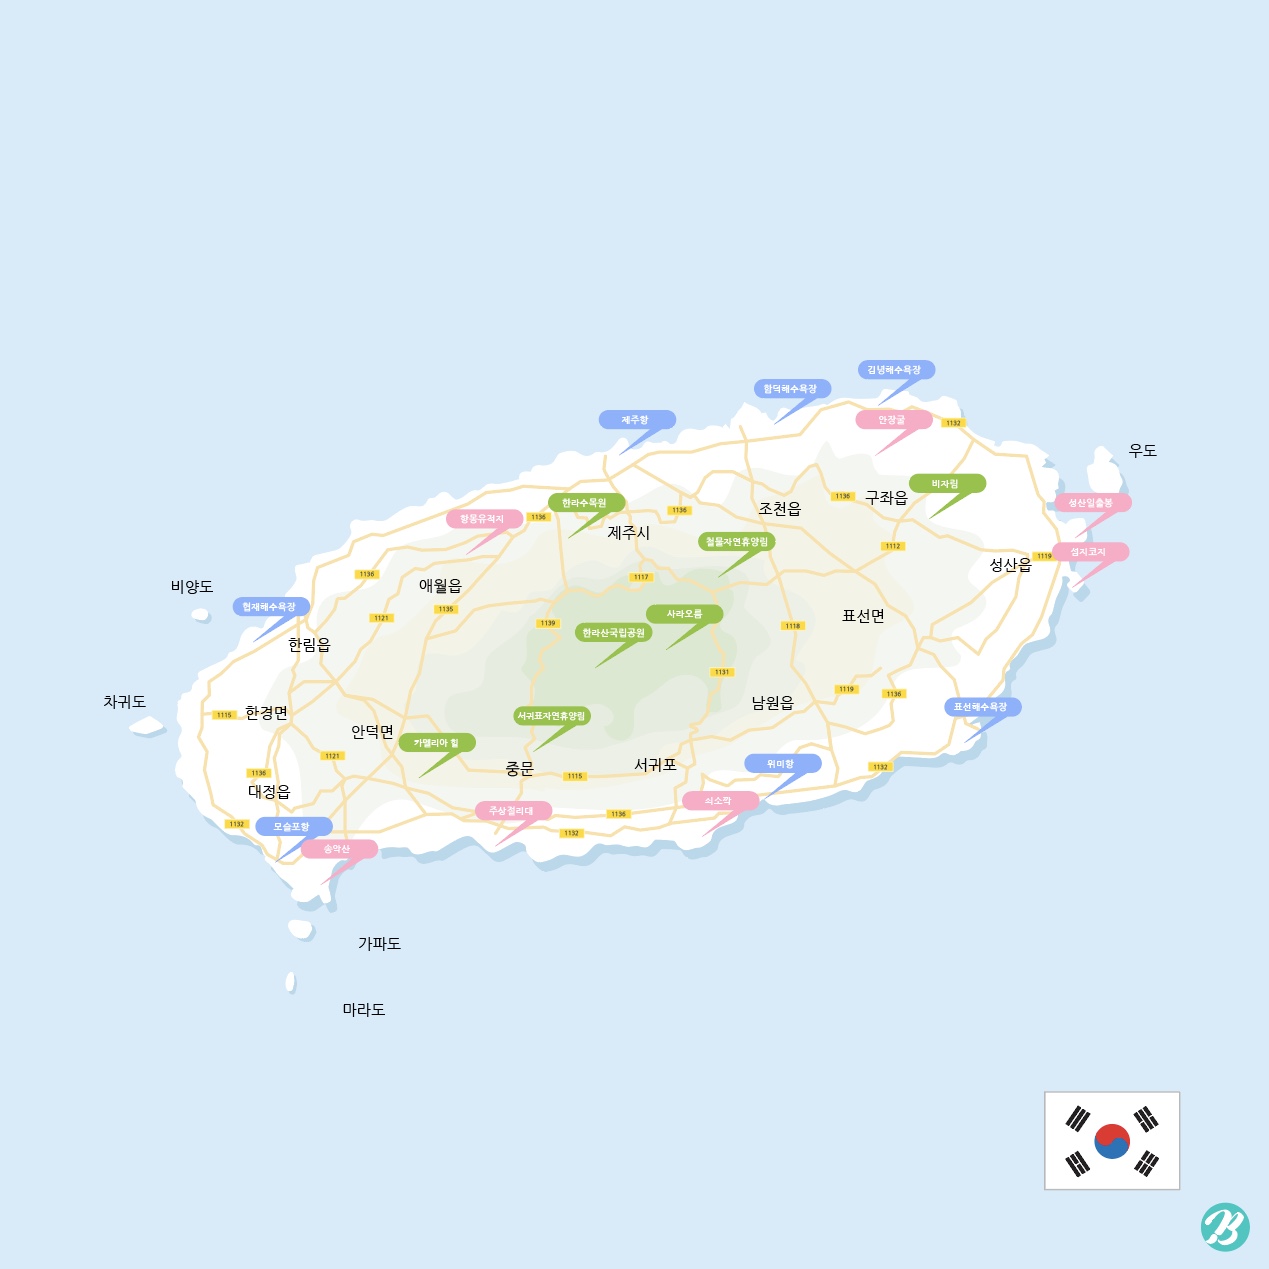 제주도 도로 지도 일러스트 Ai 다운로드 Download Jeju Island Road Map Vector - Urbanbrush